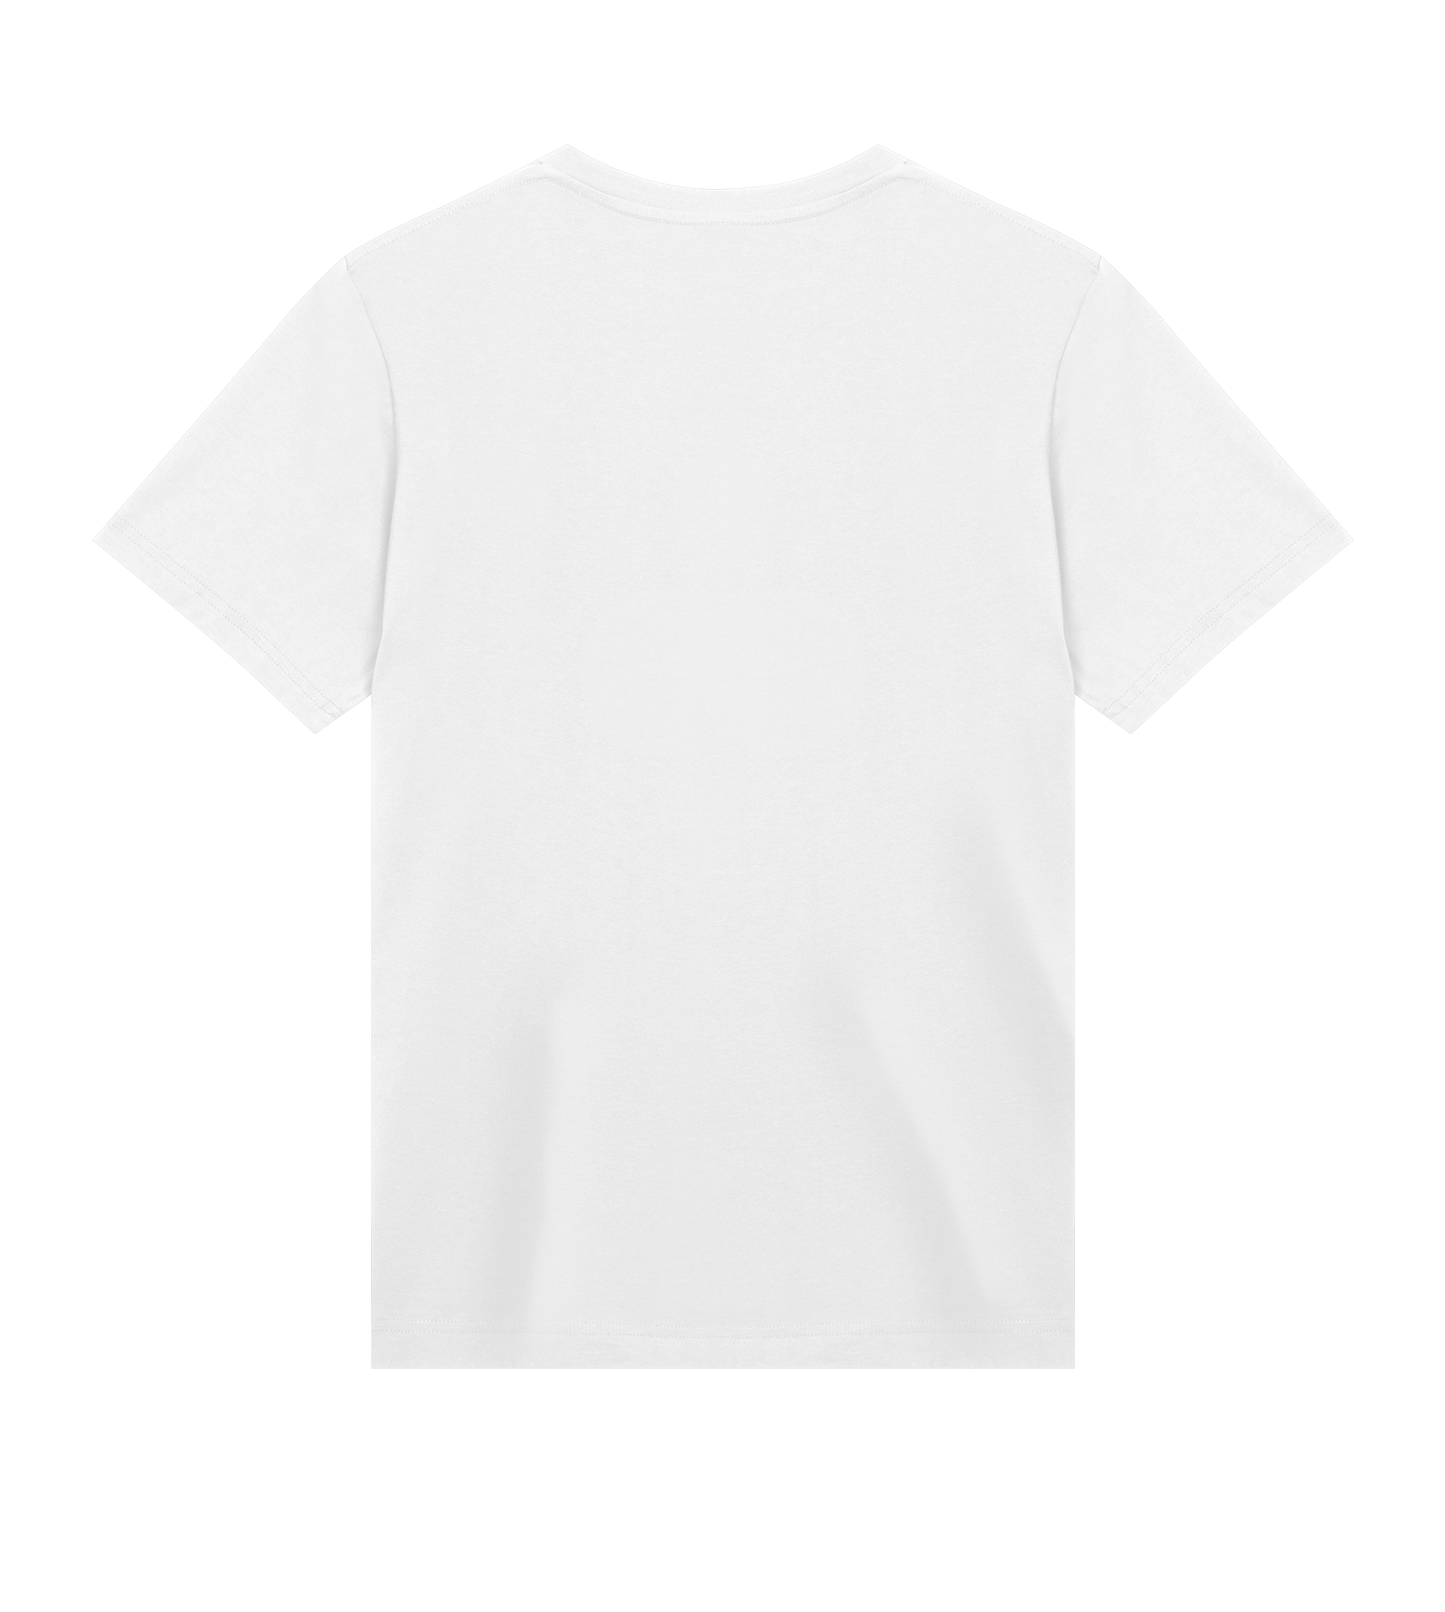 Decennier T-Shirt (First Run)